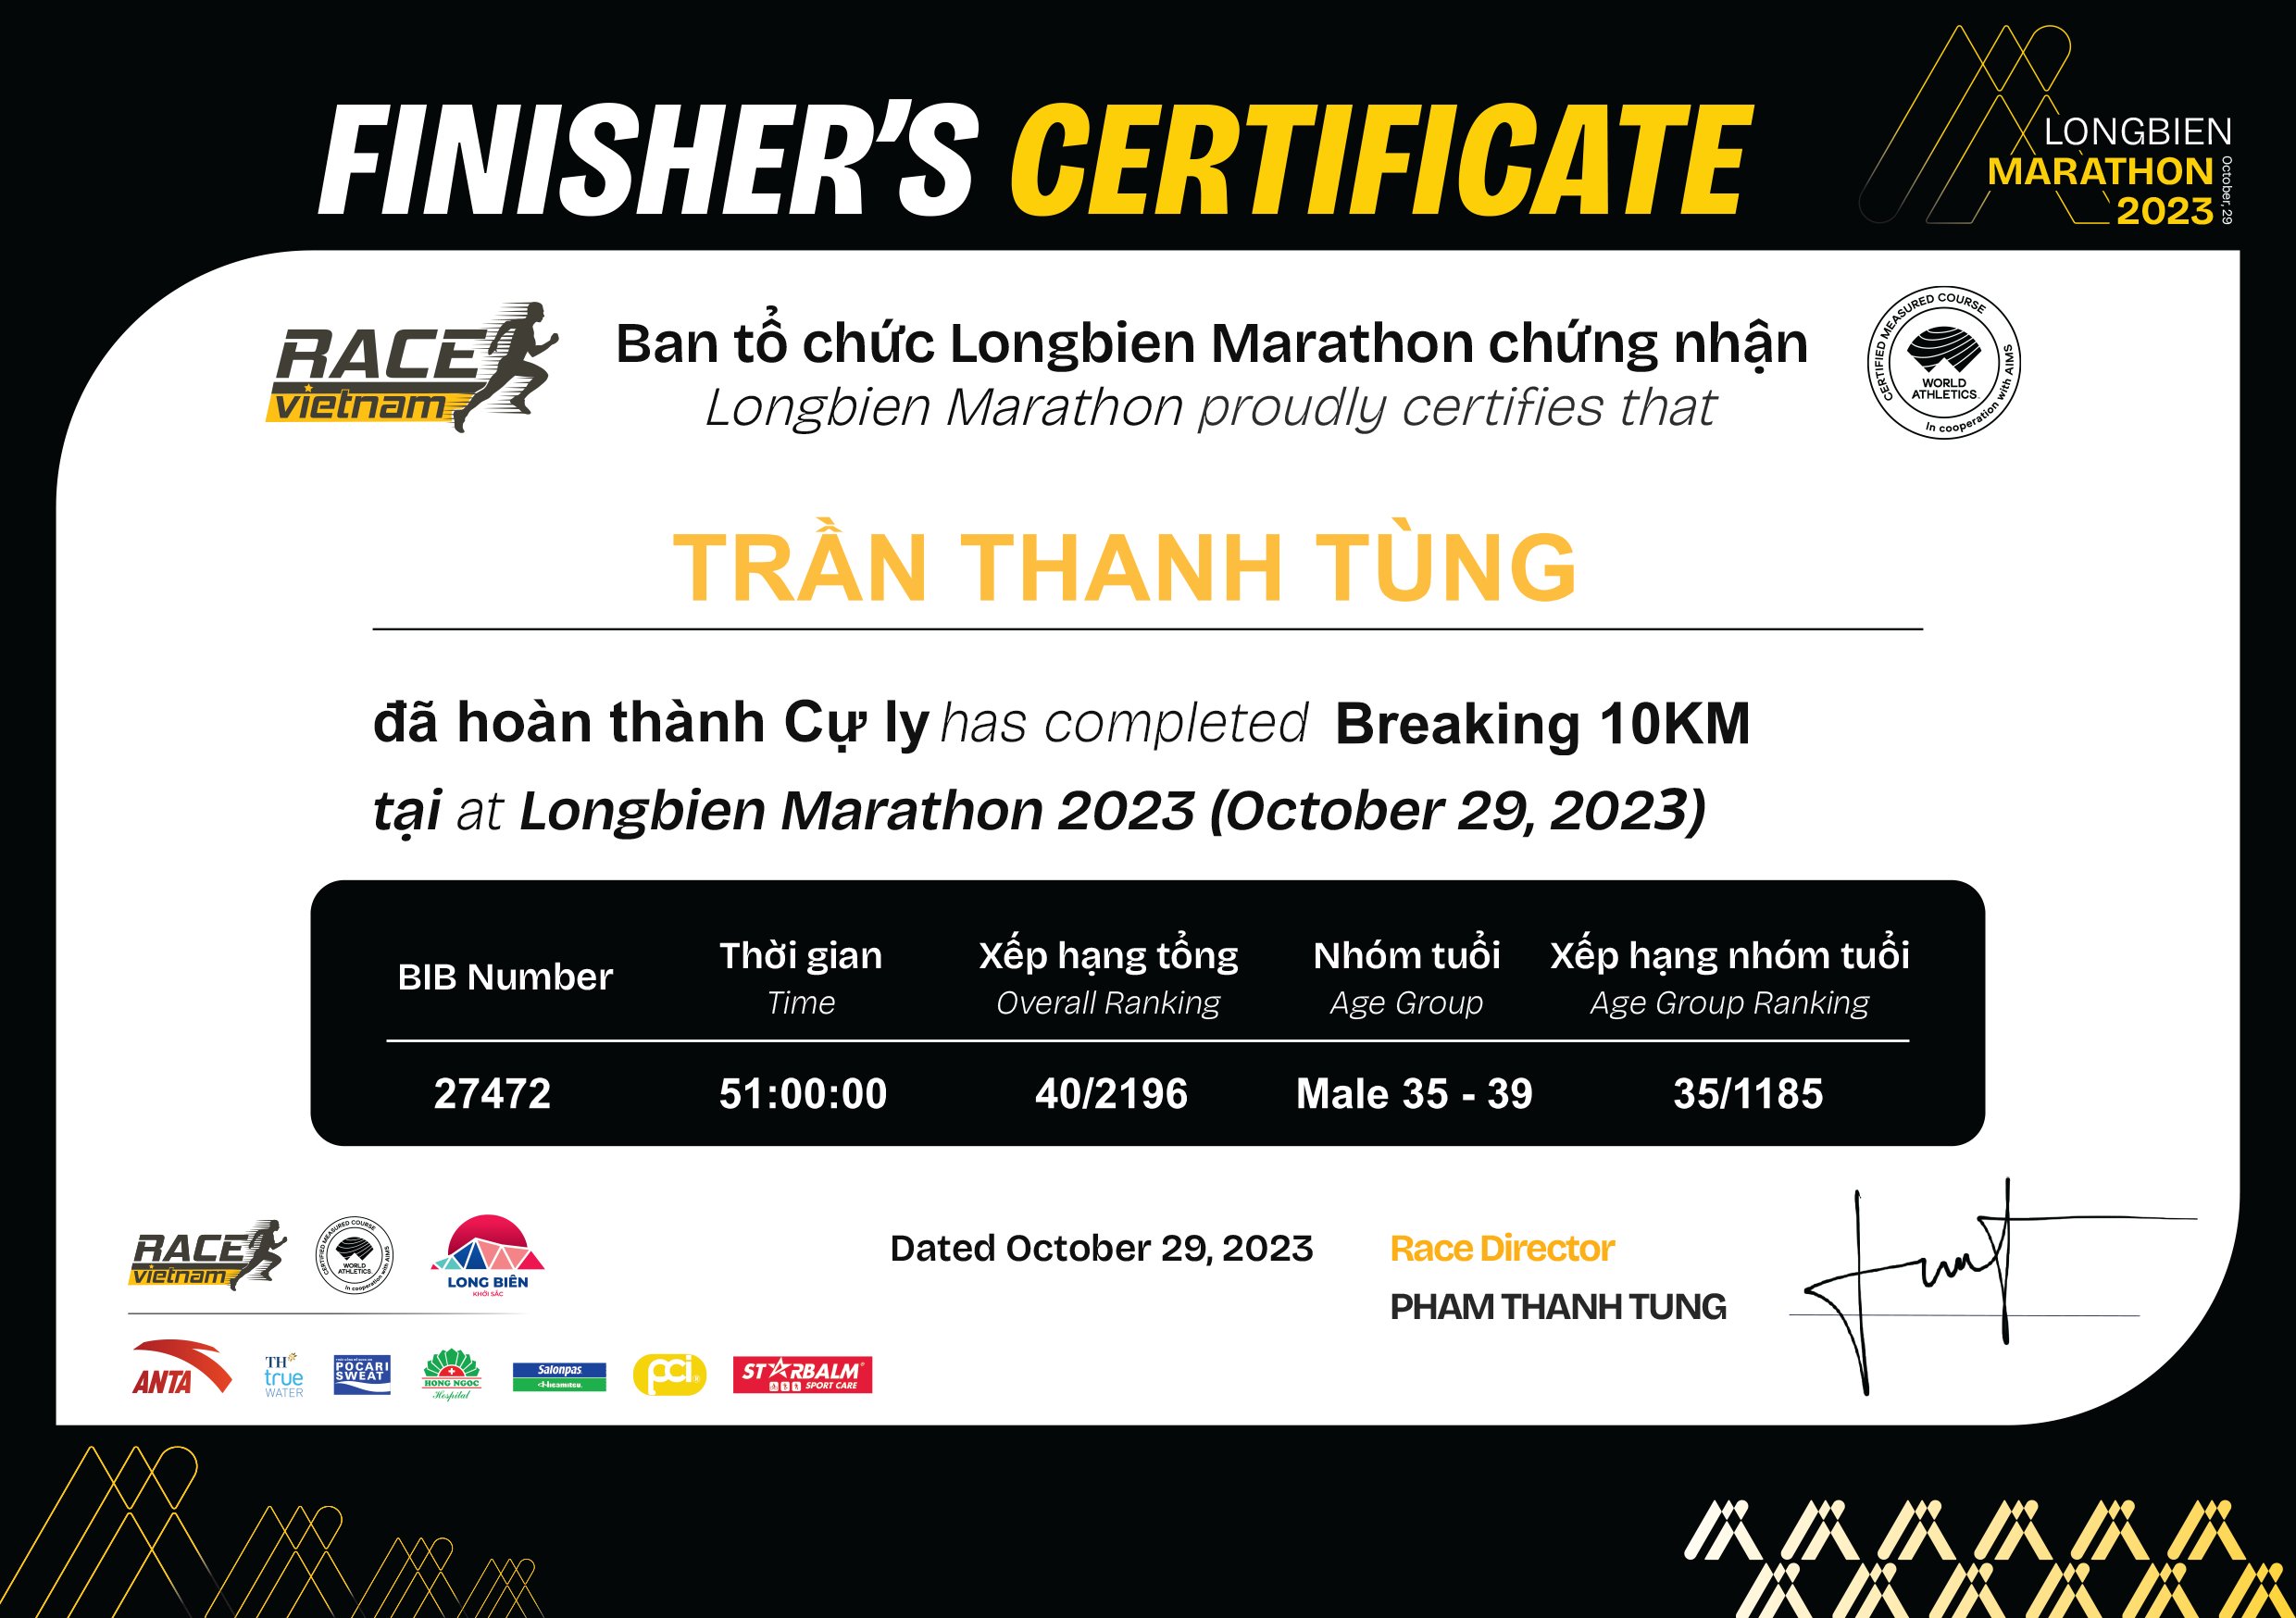 27472 - Trần Thanh Tùng